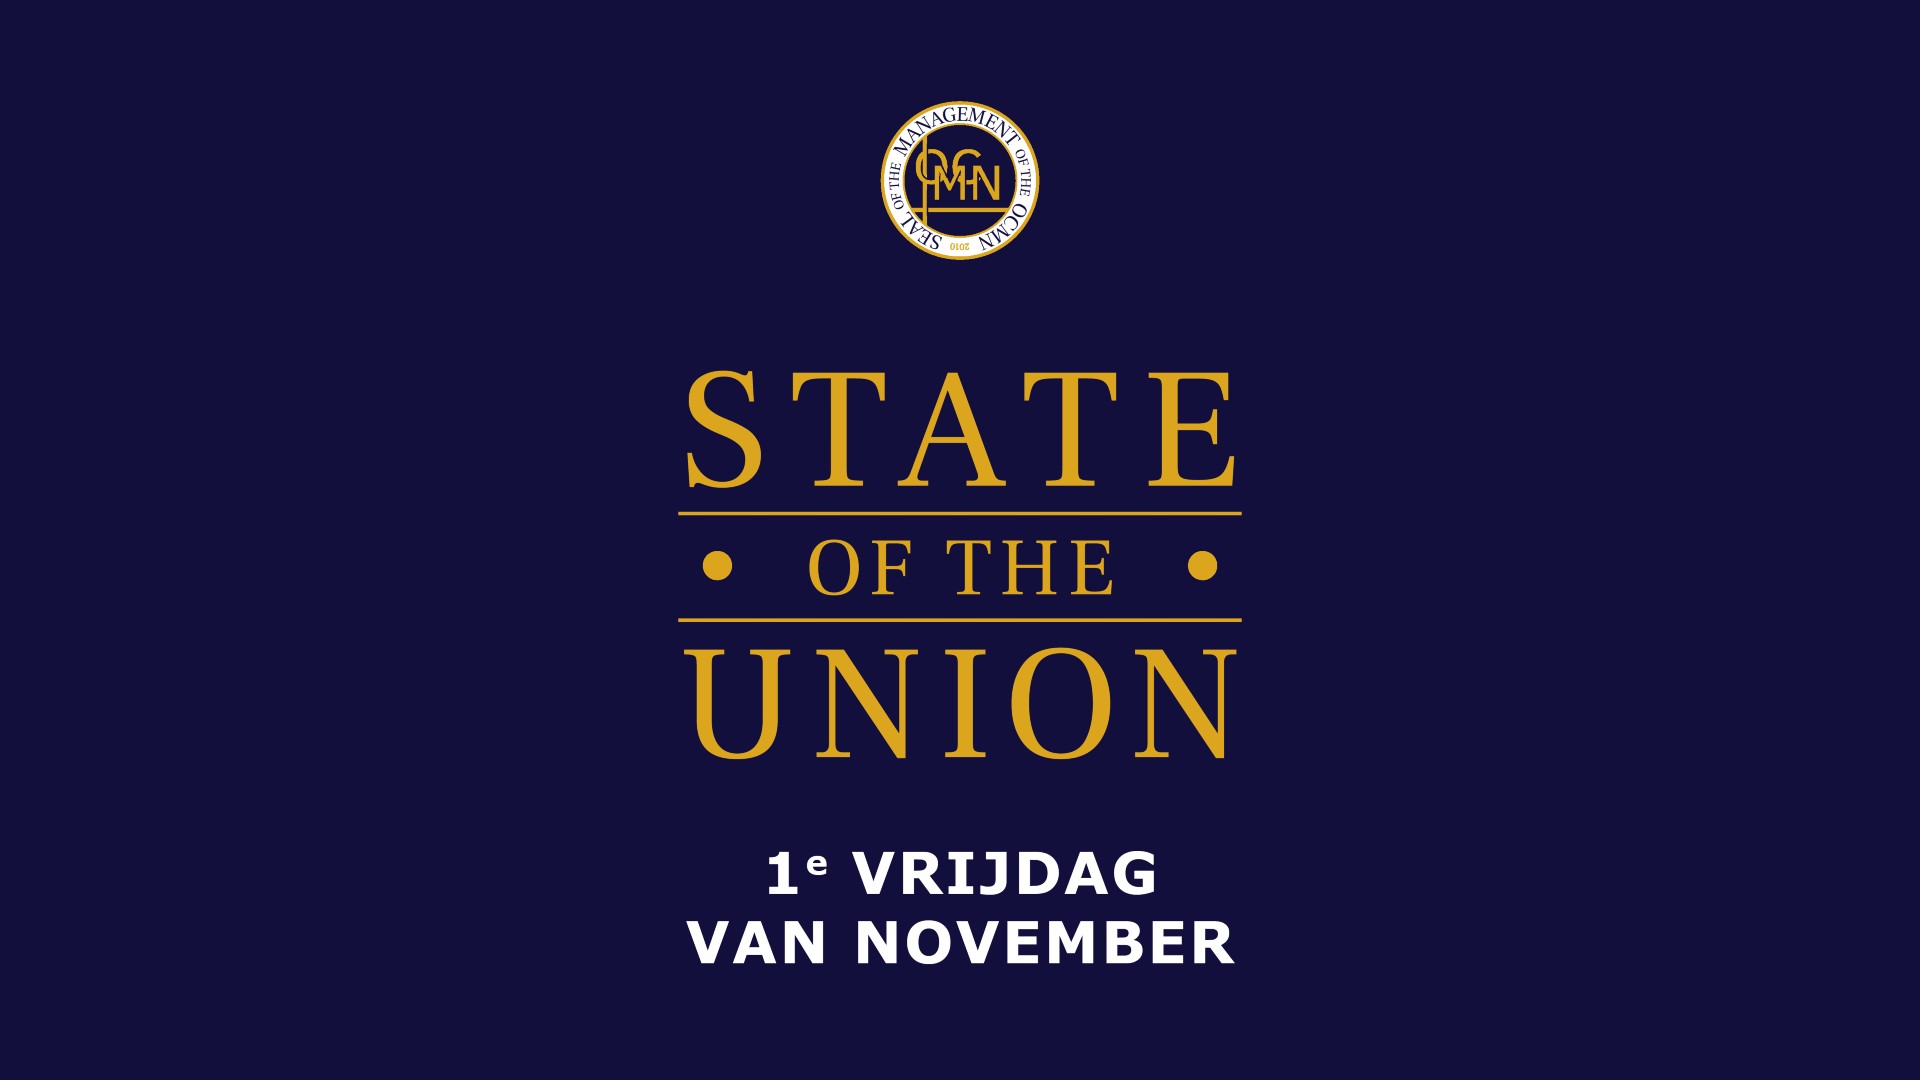 ocmn state of the union 1e vrijdag banner evetnbrite